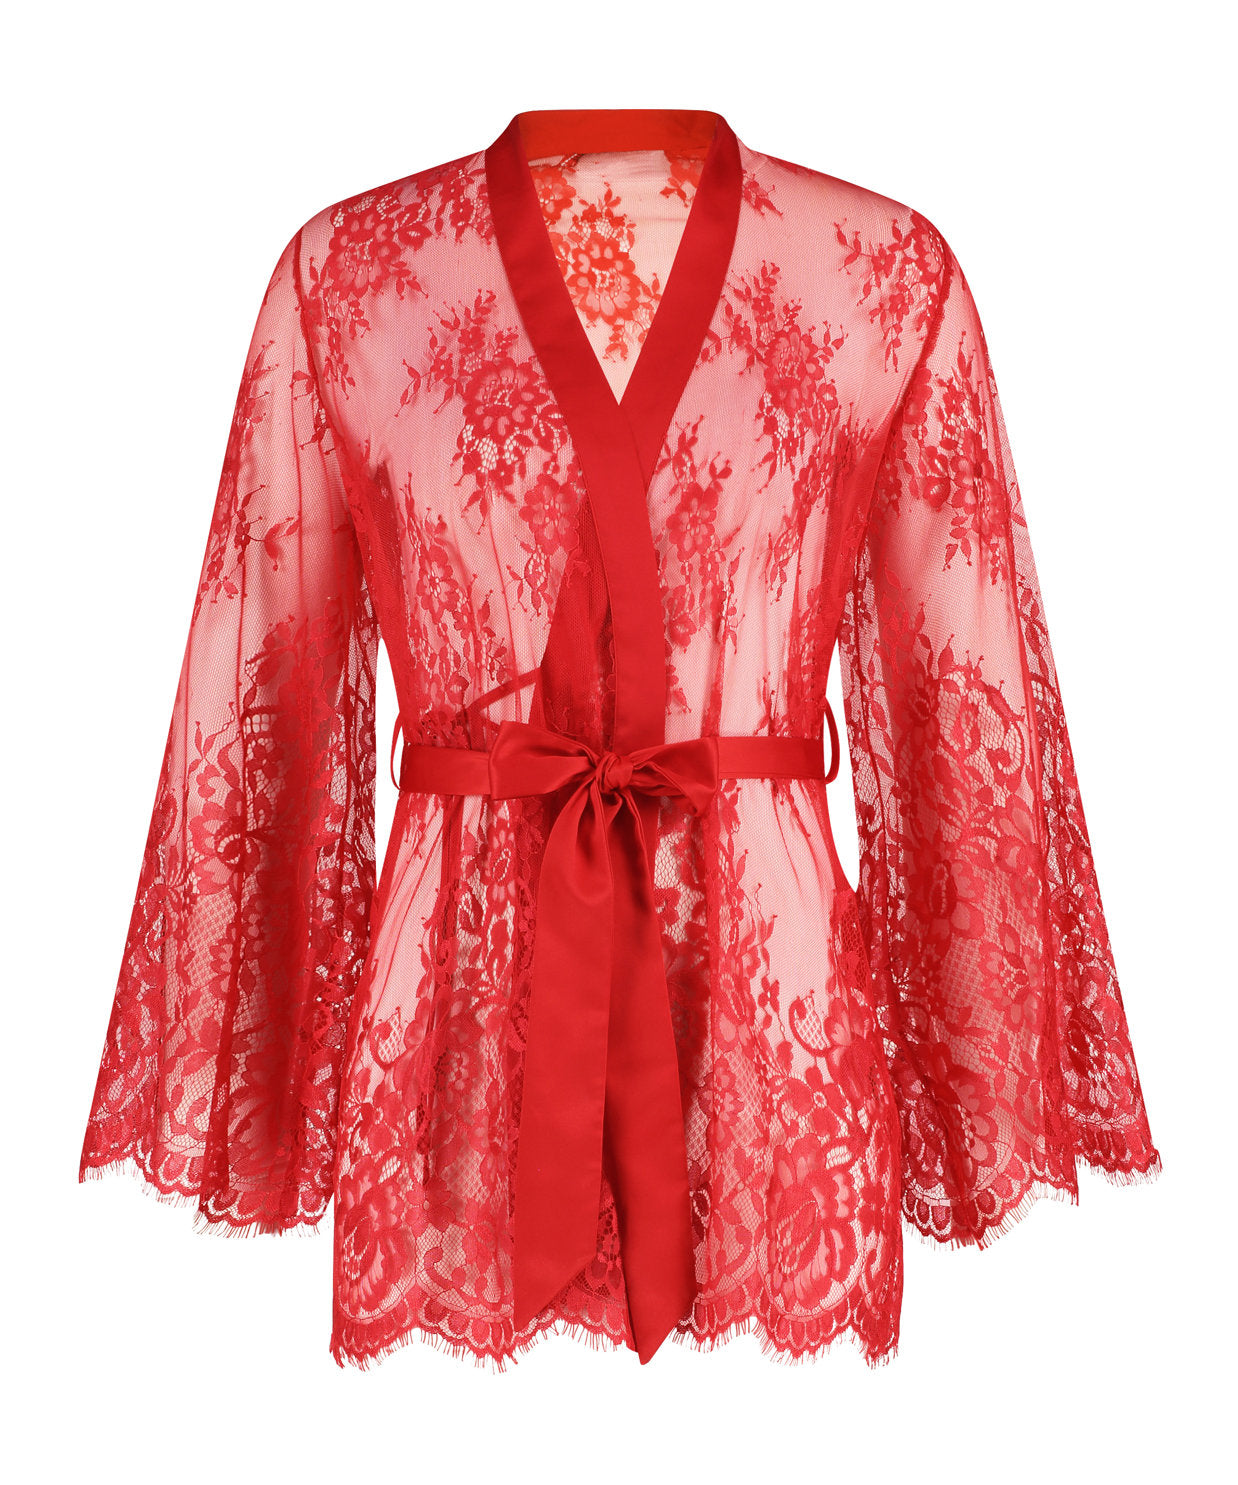 Kimono Allover Lace Isabella_191688_Tango Red_01